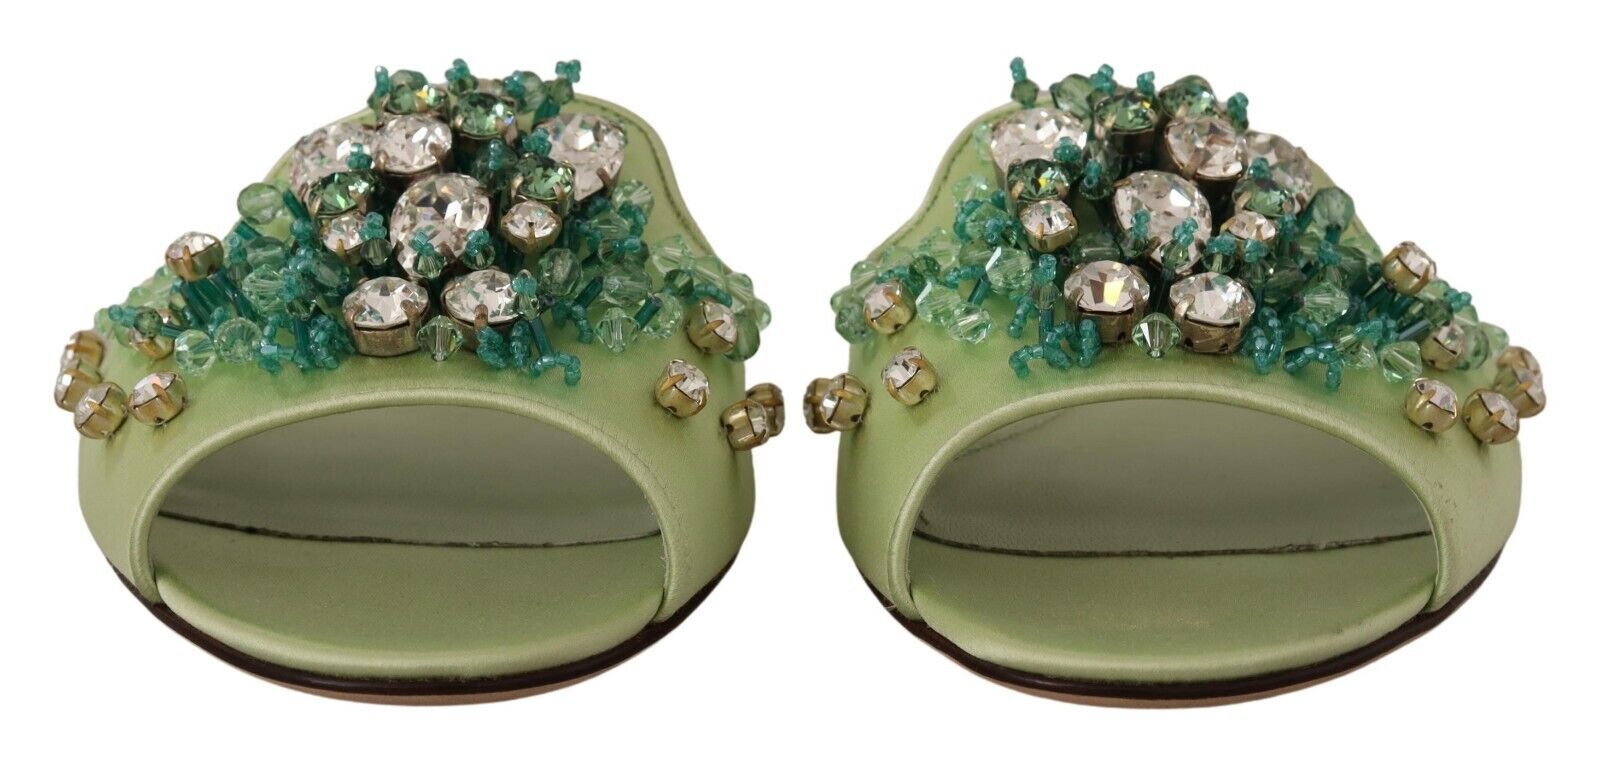 Elegant Crystal-Embellished Green Leather Slides